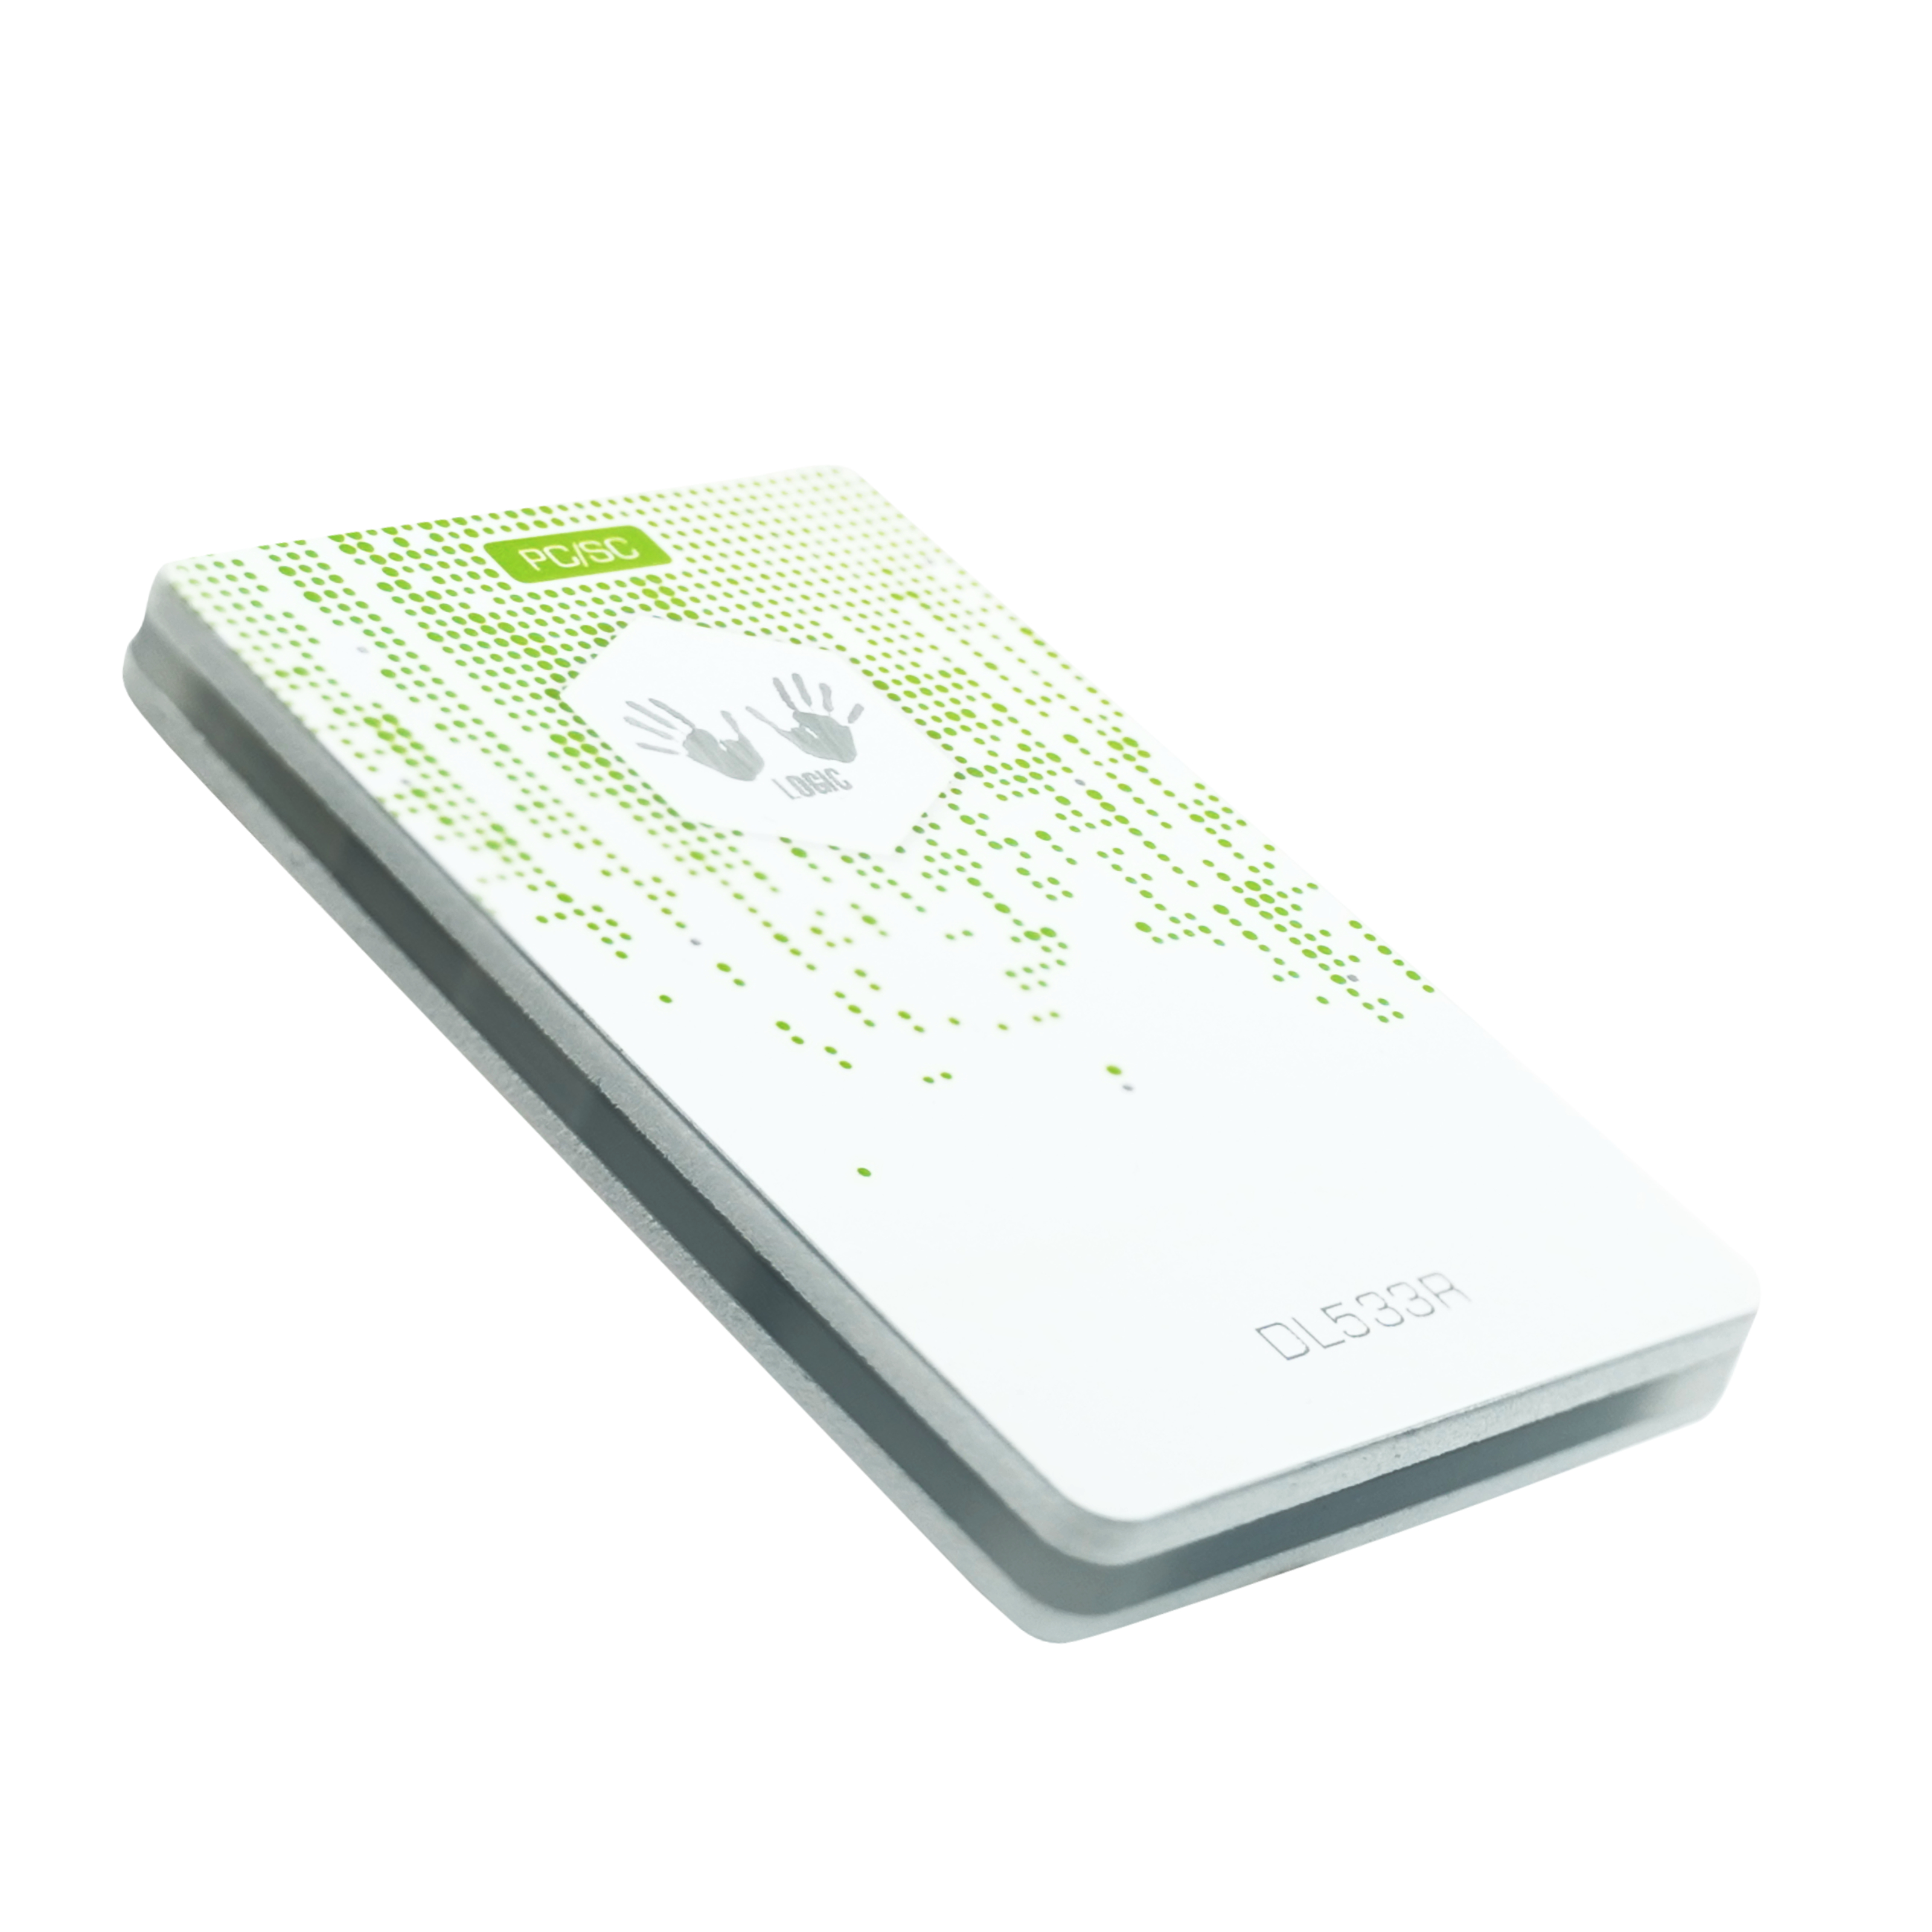 NFC Reader / Writer DL533R - 85 x 55 x 8,30 mm - weiß / grün - mit Reichweiten Booster Funktion